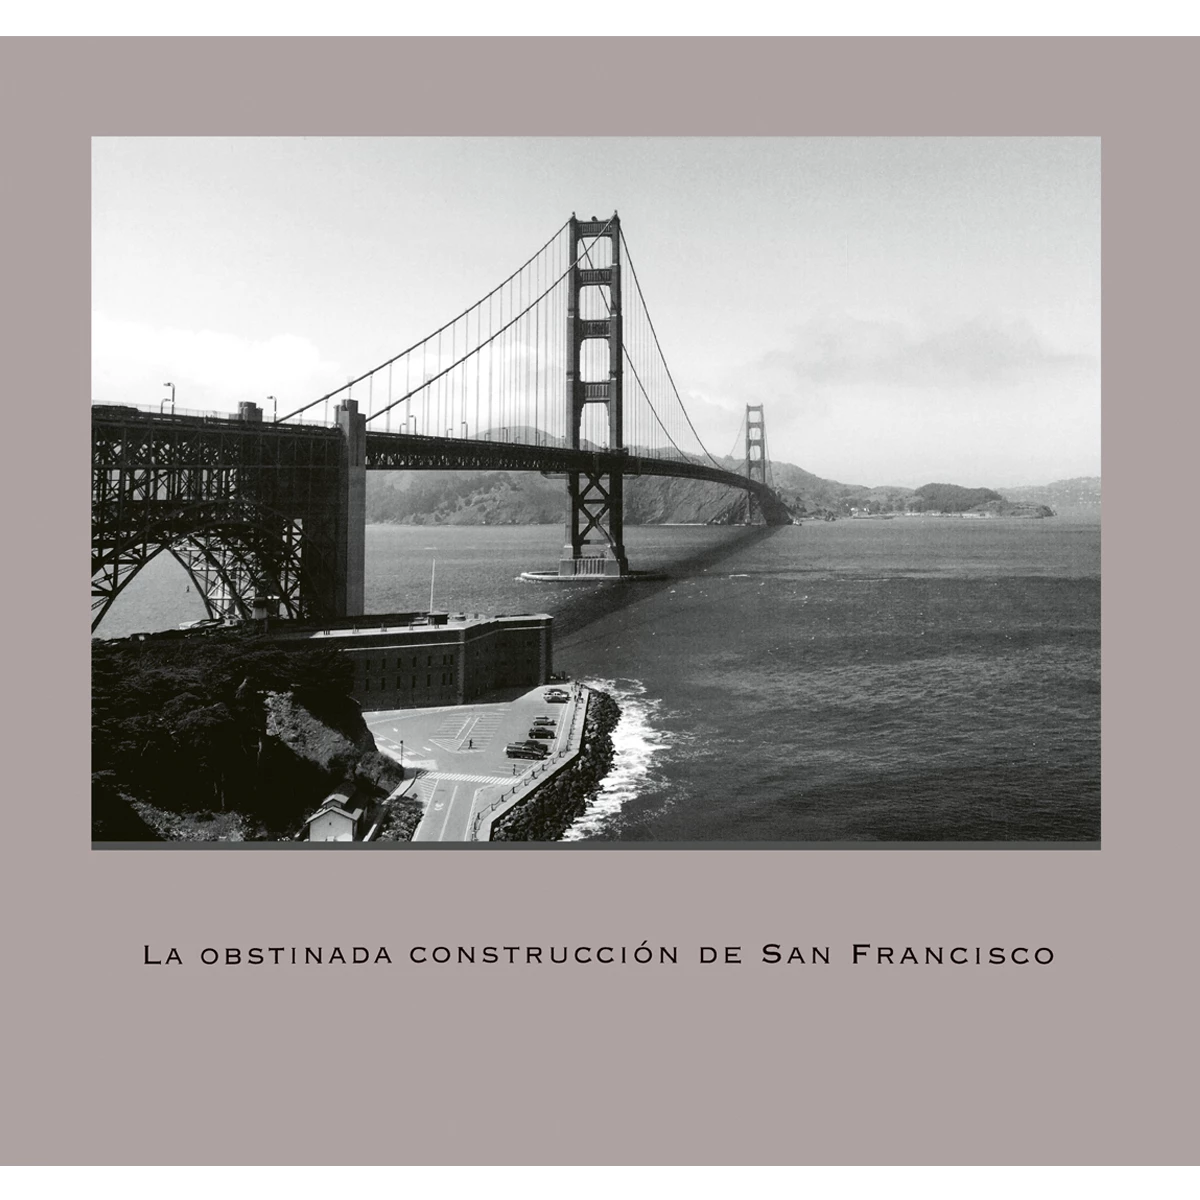 La obstinada construcción de San Francisco